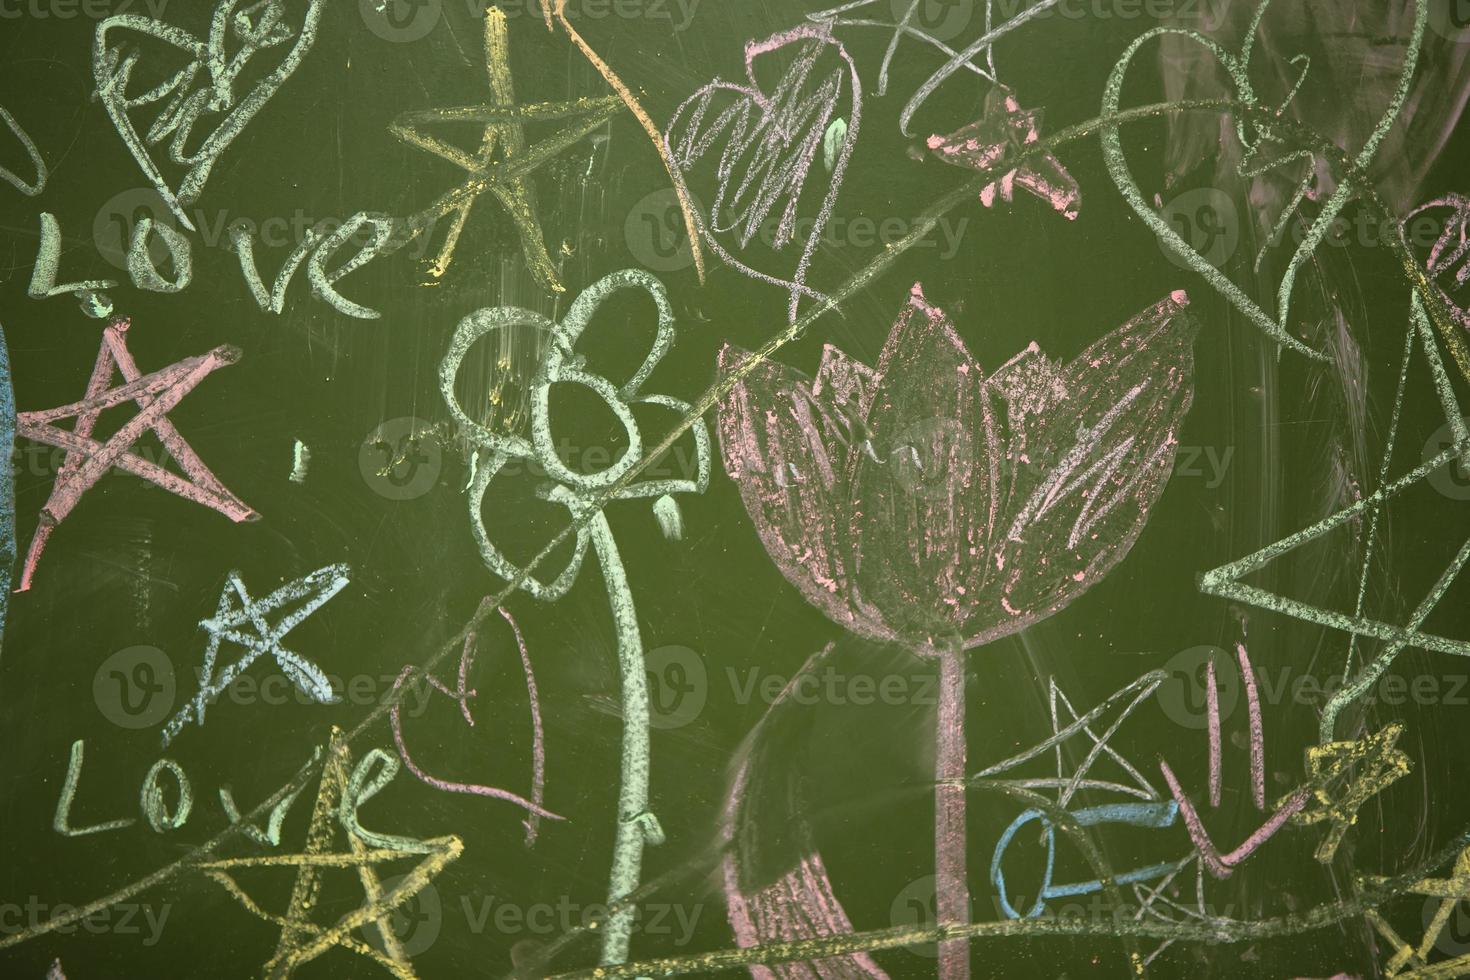 desenhos do crianças com giz em uma escola verde borda. foto